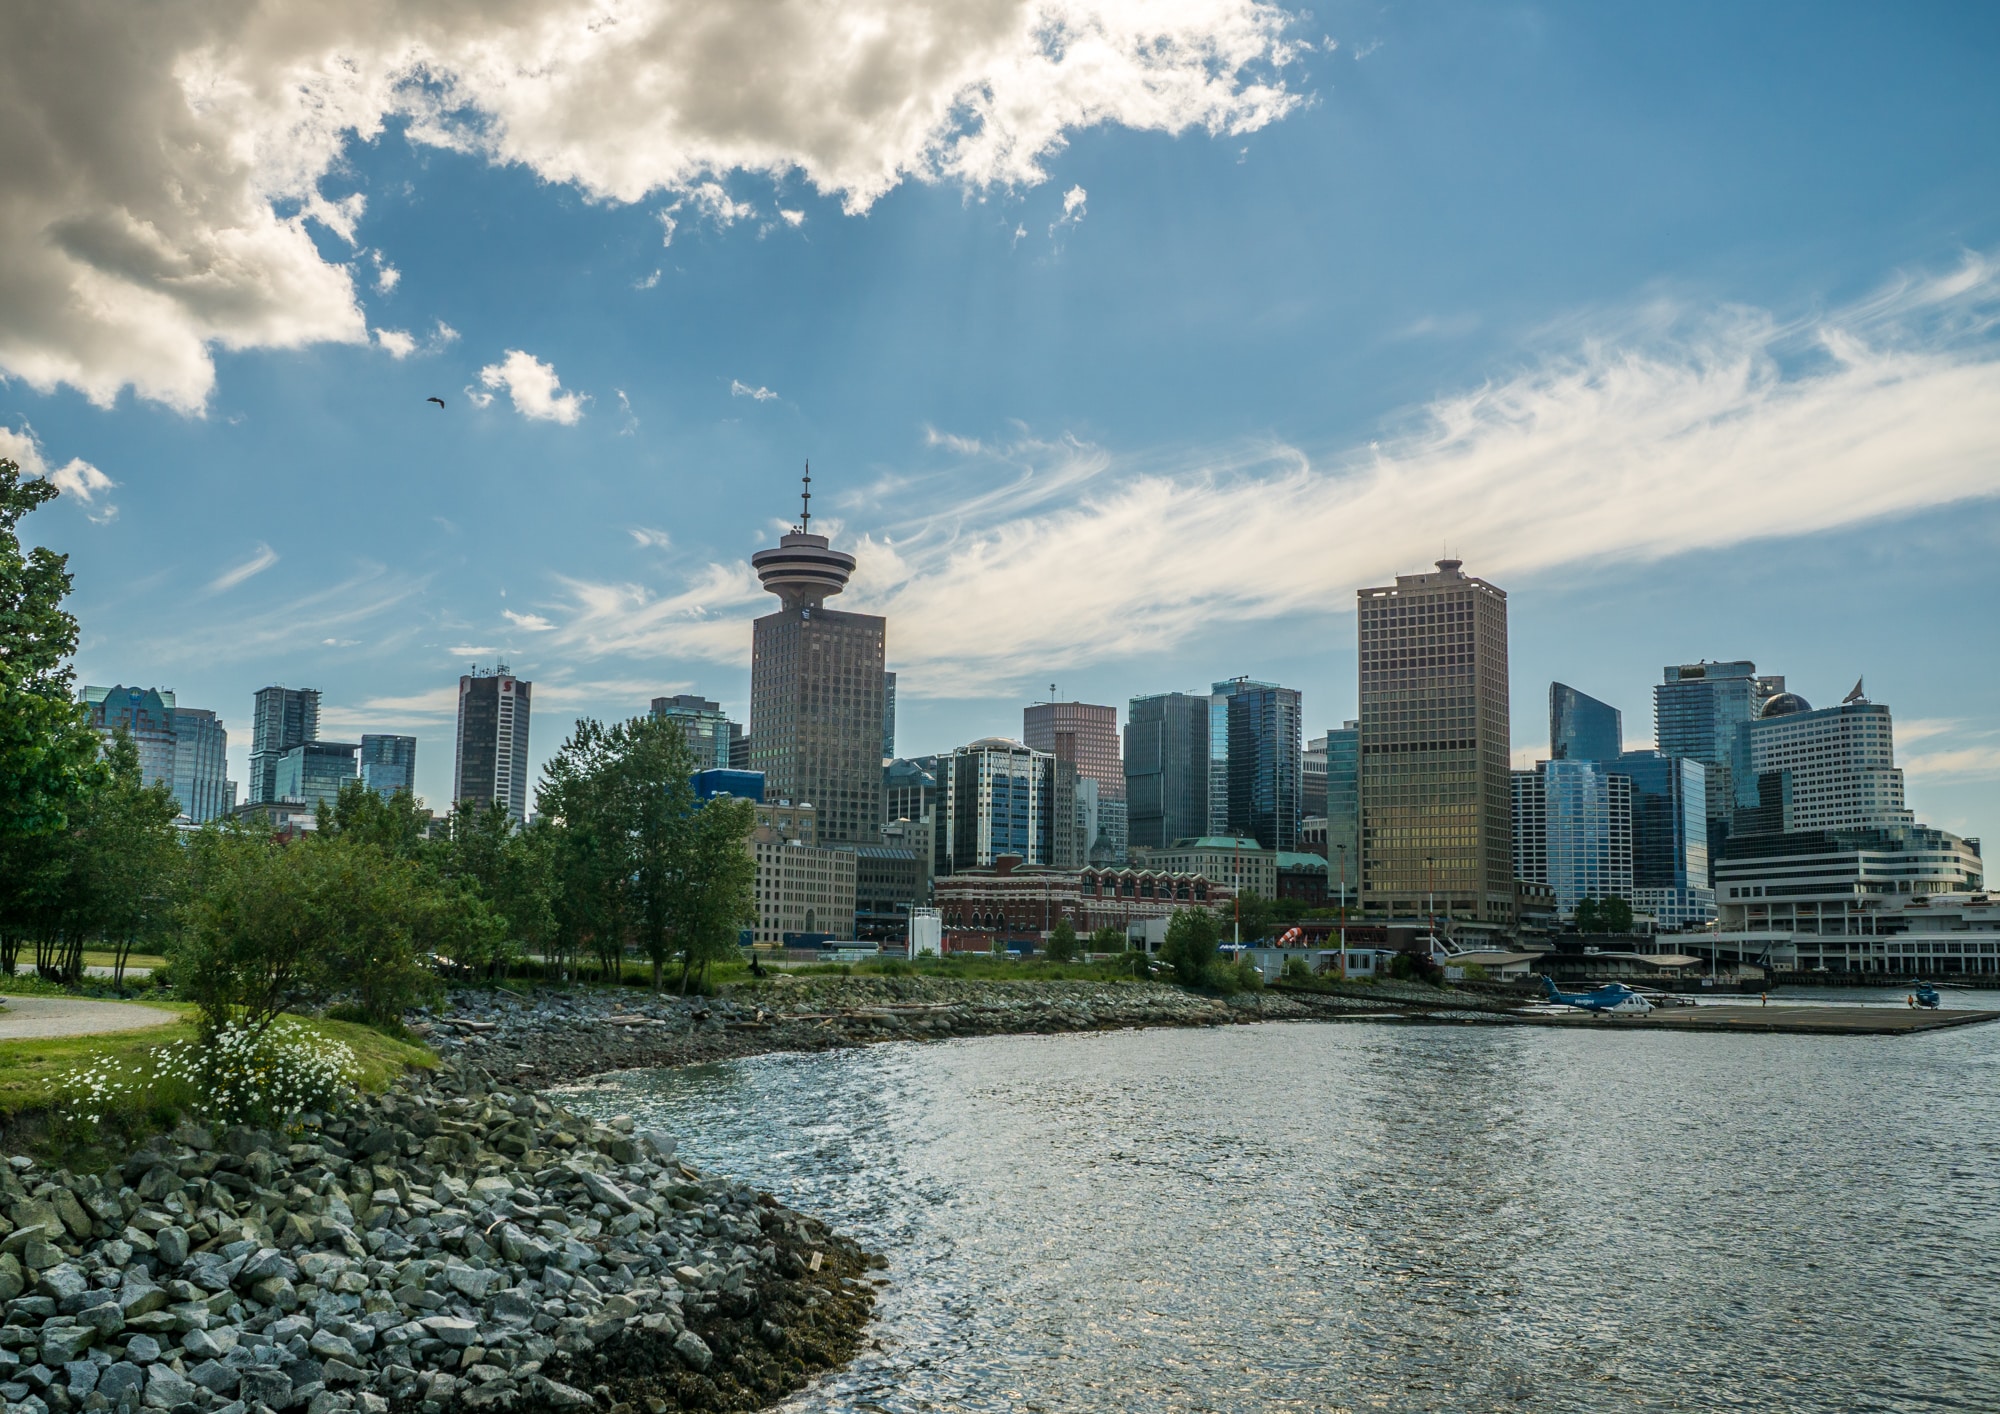 De ronde toren is de Vancouver Lookout